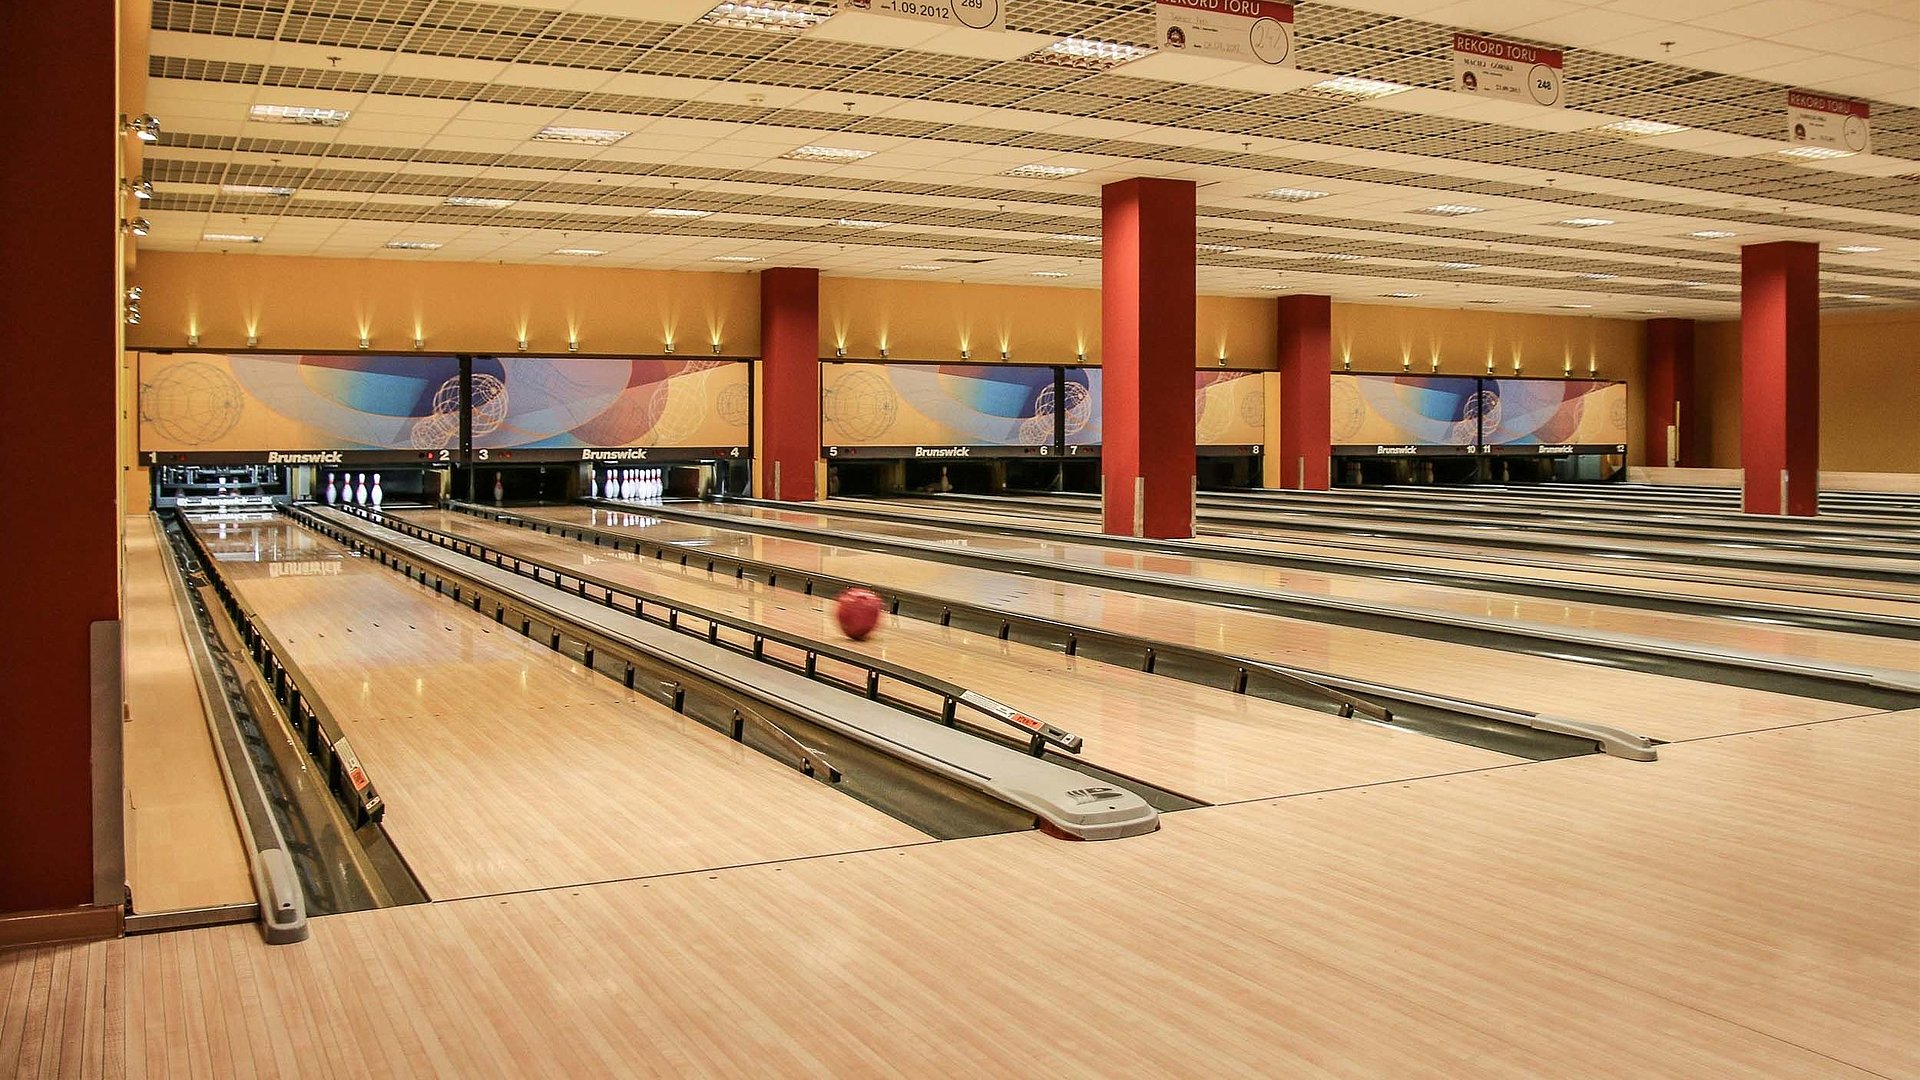 Indoor-Freizeitangebote am Chiemsee - Bowlingbahnen